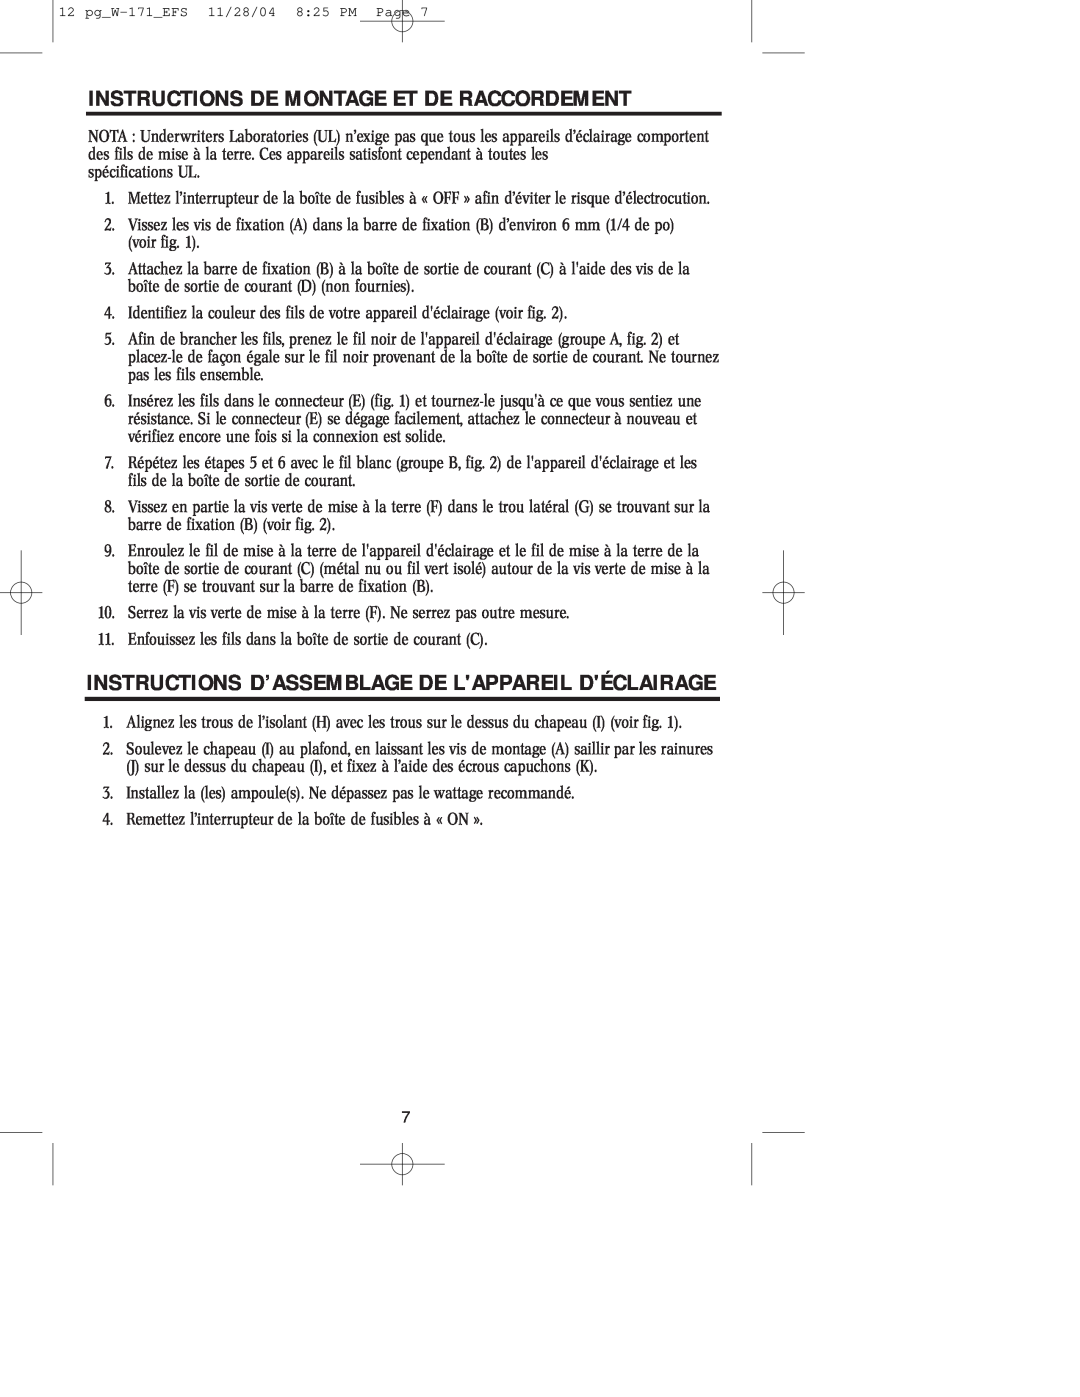 Westinghouse Outdoor Lighting Fixture owner manual Instructions De Montage Et De Raccordement 